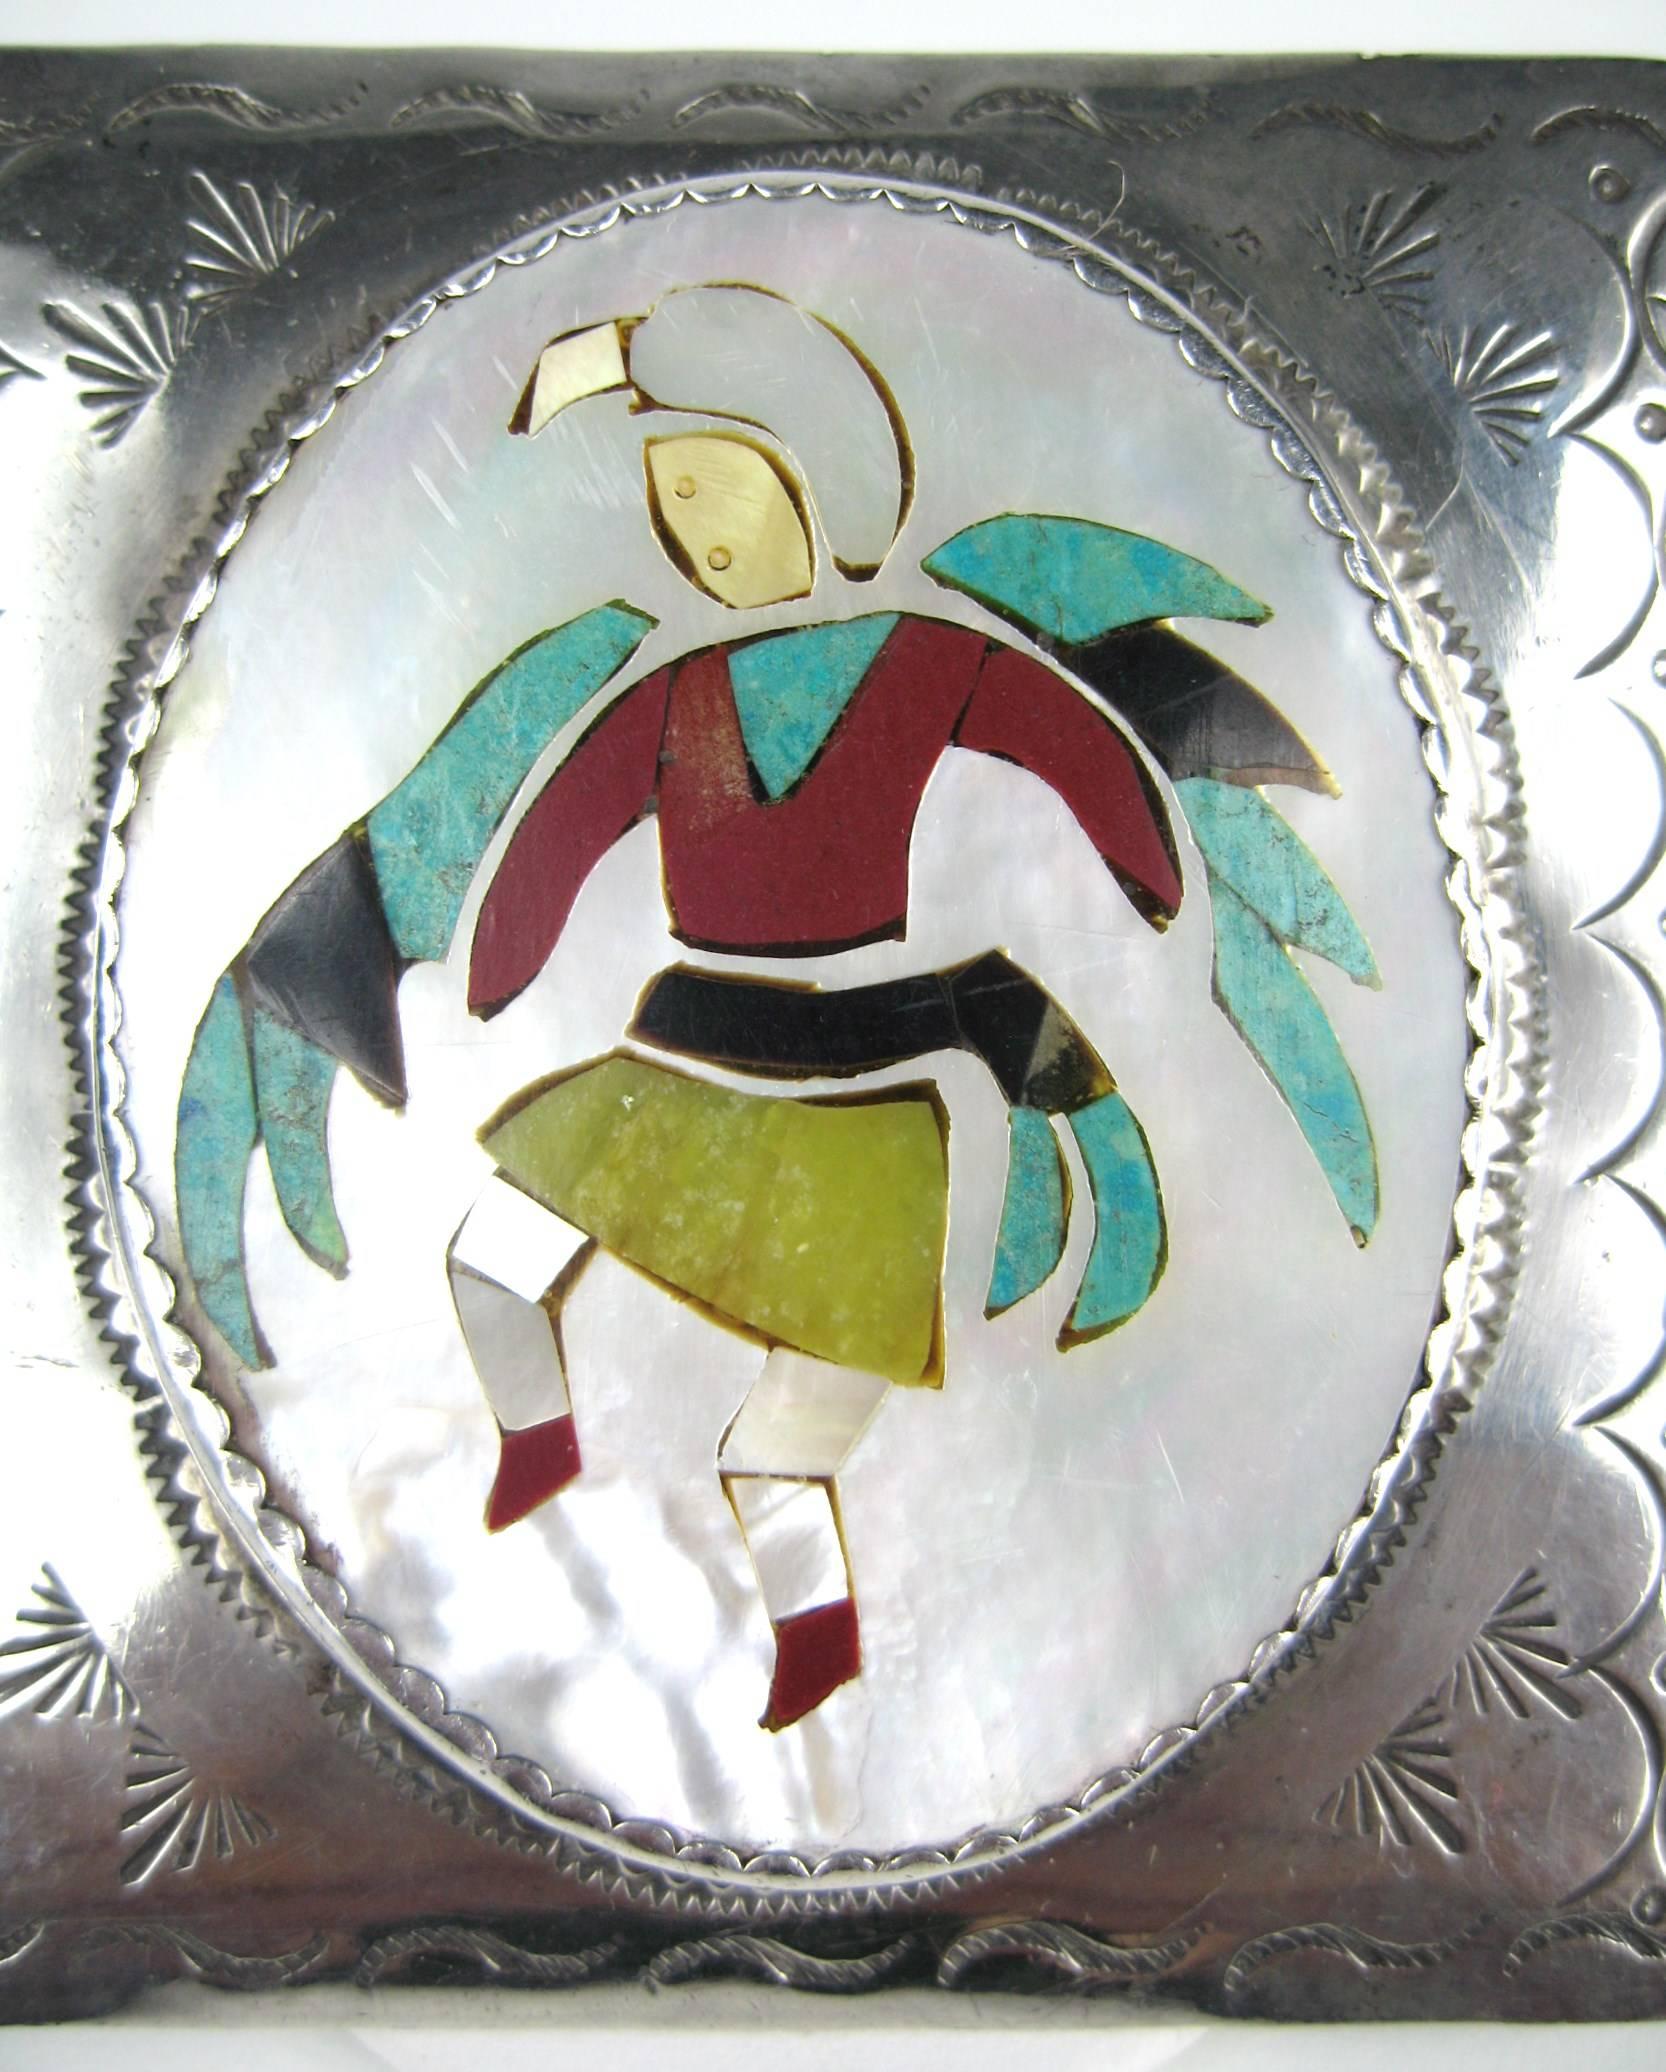 Superbe boucle de ceinture Kachina Zuni avec incrustation de nacre, corail, turquoise, coquillage et ormeau. Poinçonné au dos. Mesurant 2,75 po x 3,00 po de largeur. Il s'agit d'une collection massive de bijoux Hopi, Zuni, Navajo, du Sud-Ouest, en